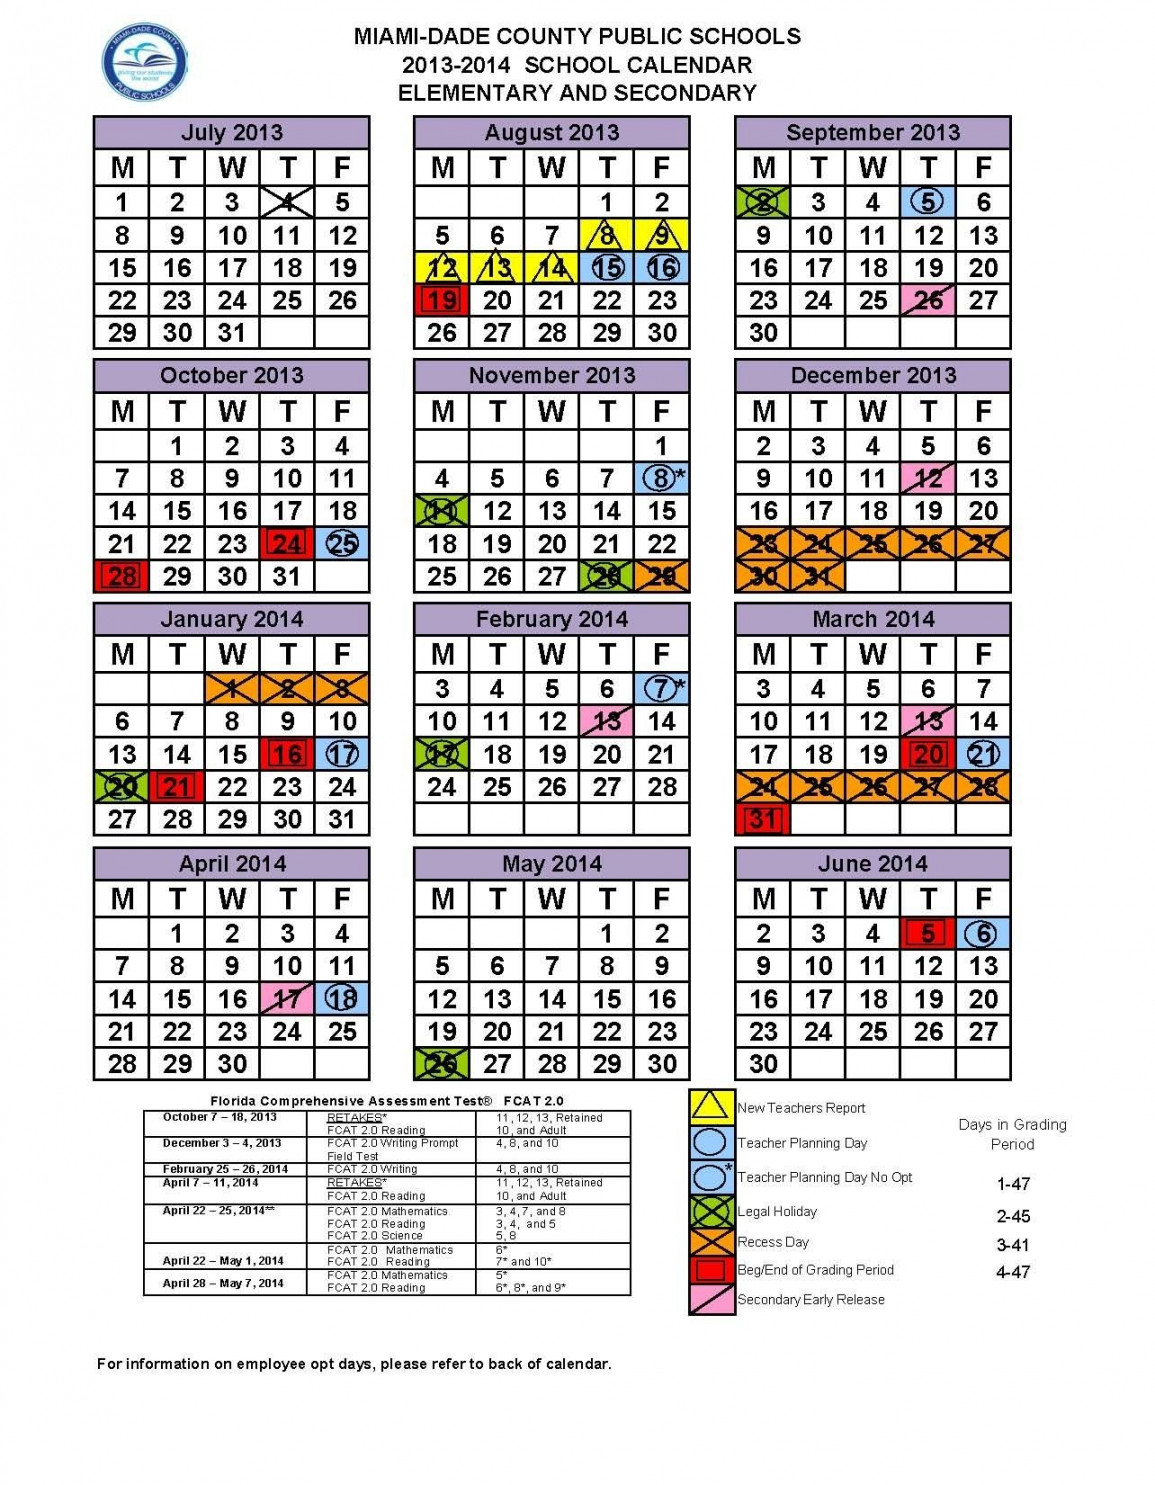 Dashing School Calendar In Miami Dade  School calendar